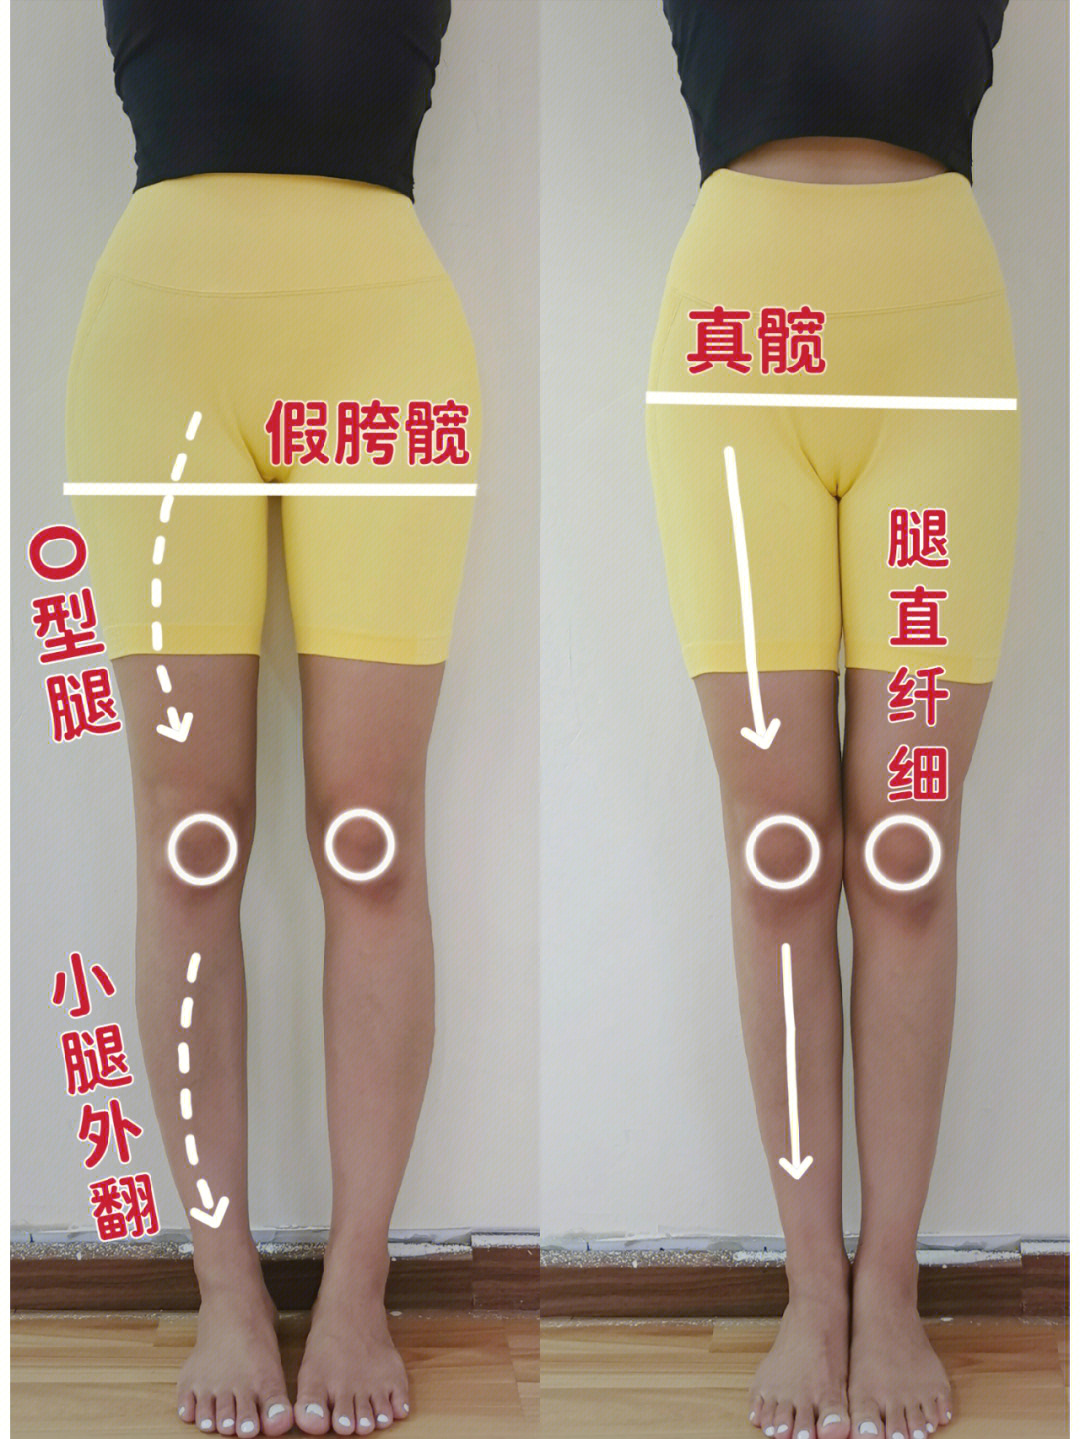 改善o型腿的动作图解图片